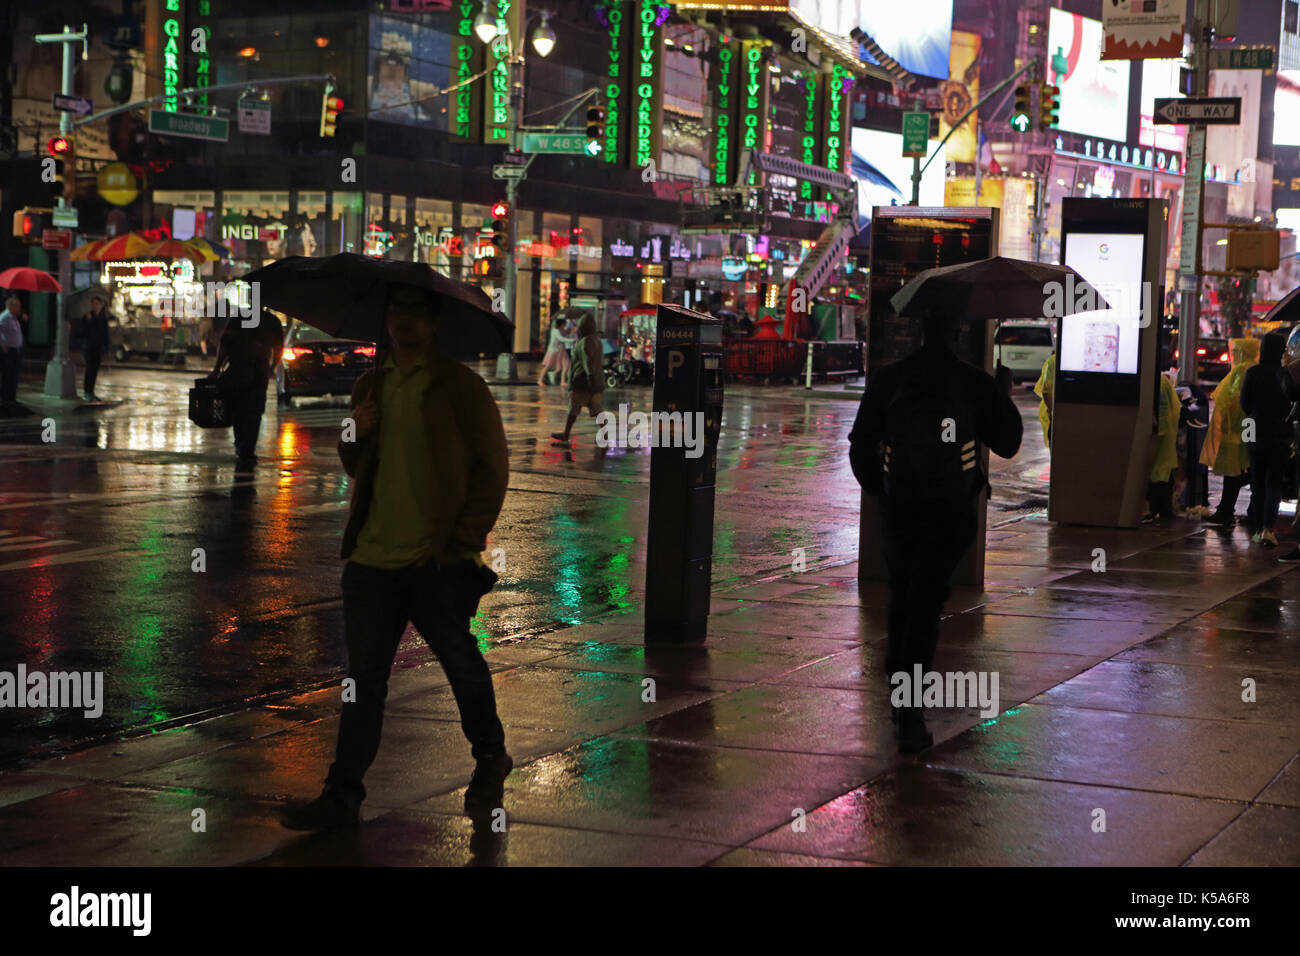 Notte piovosa in times square, i turisti con ombrelloni a piedi 7th Avenue e Broadway illuminata da billboard elettrico schermi pubblicitari Foto Stock